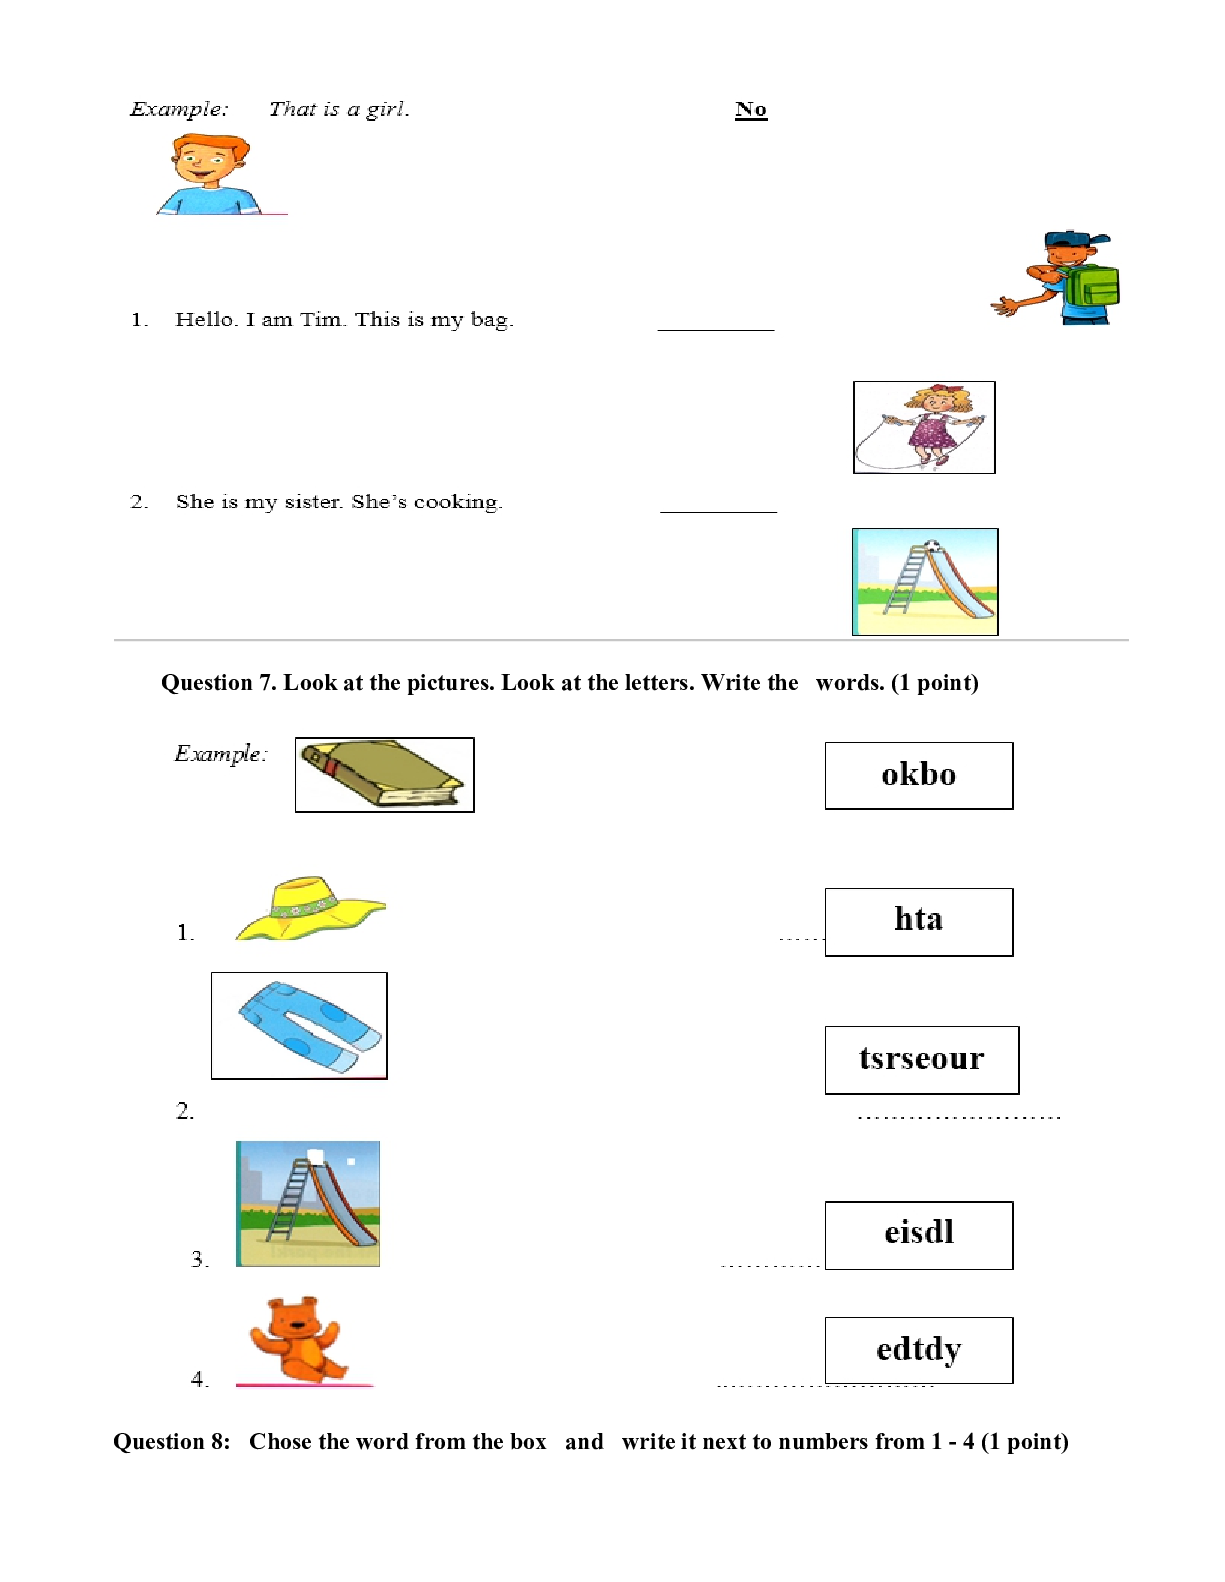 Bài tập ôn hè môn Tiếng Anh lớp 3 lên lớp 4 (trang 4)